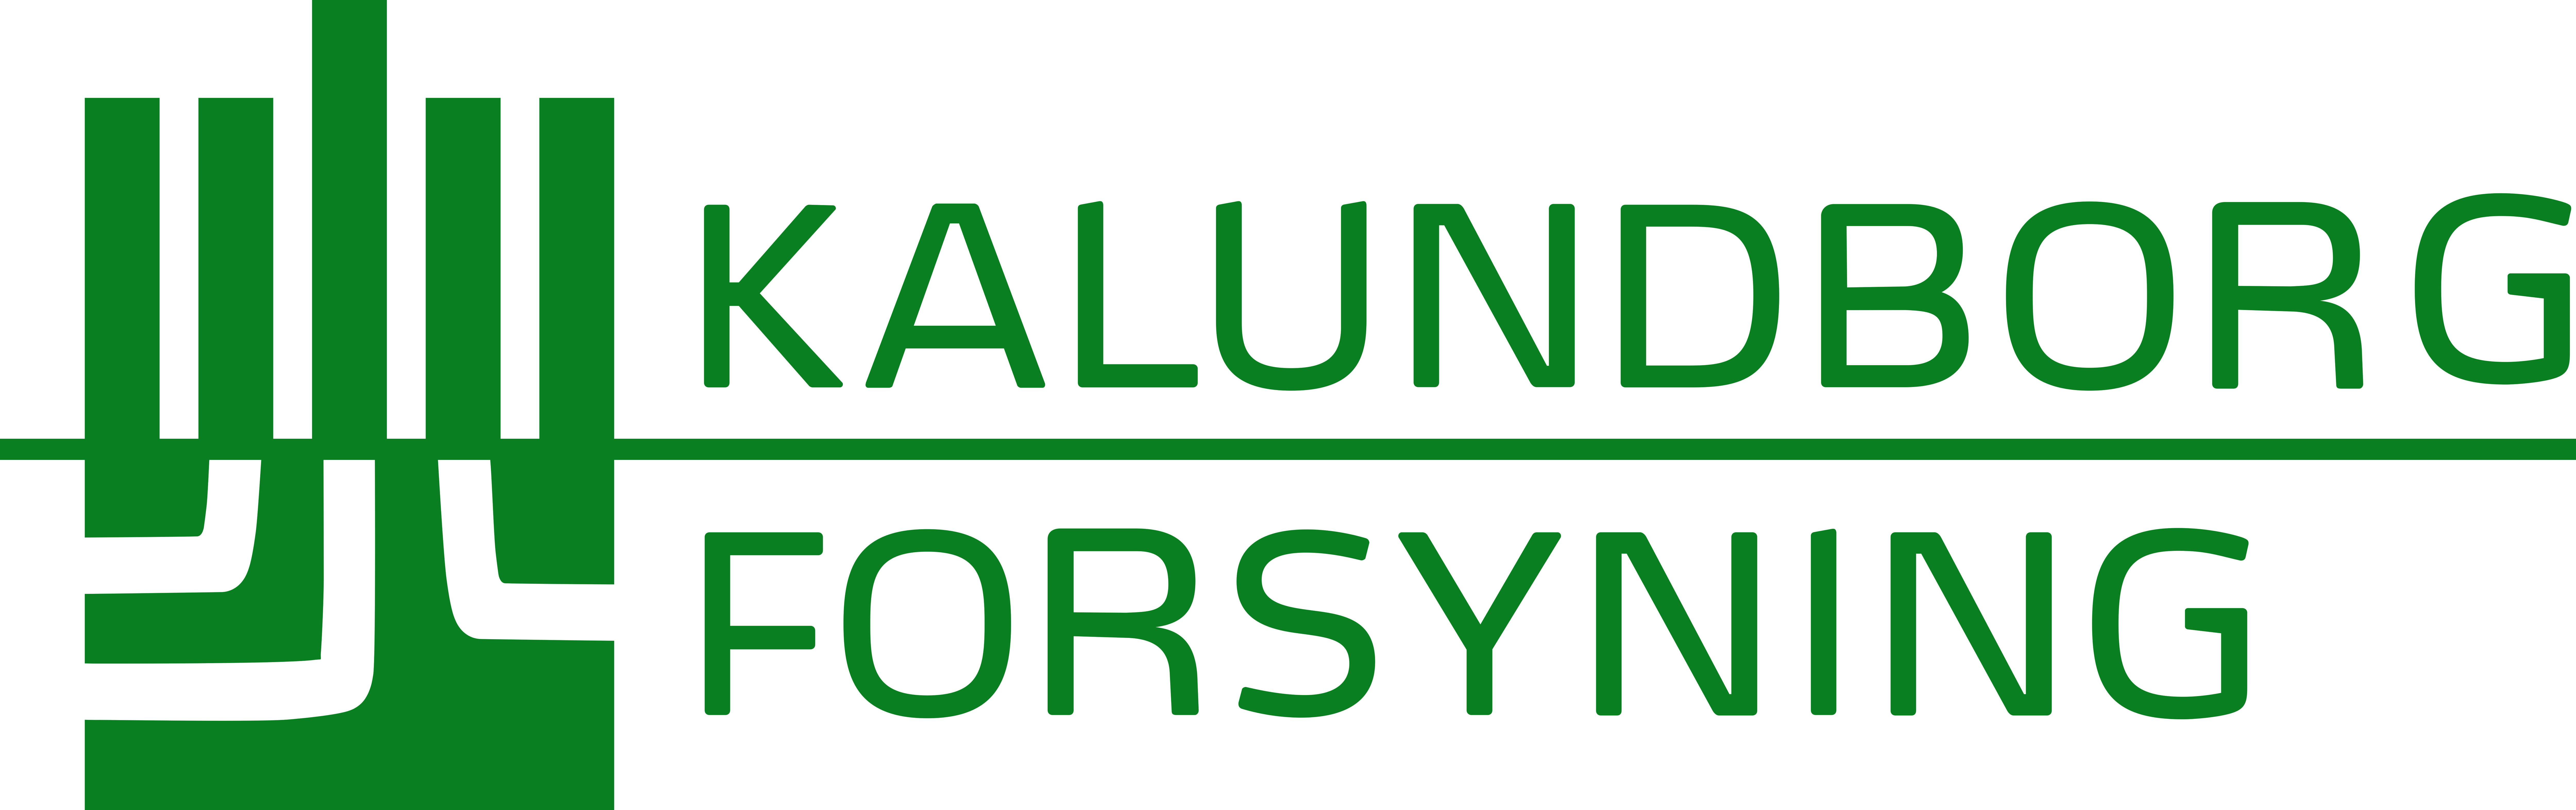 Kalundborg Forsyning logo